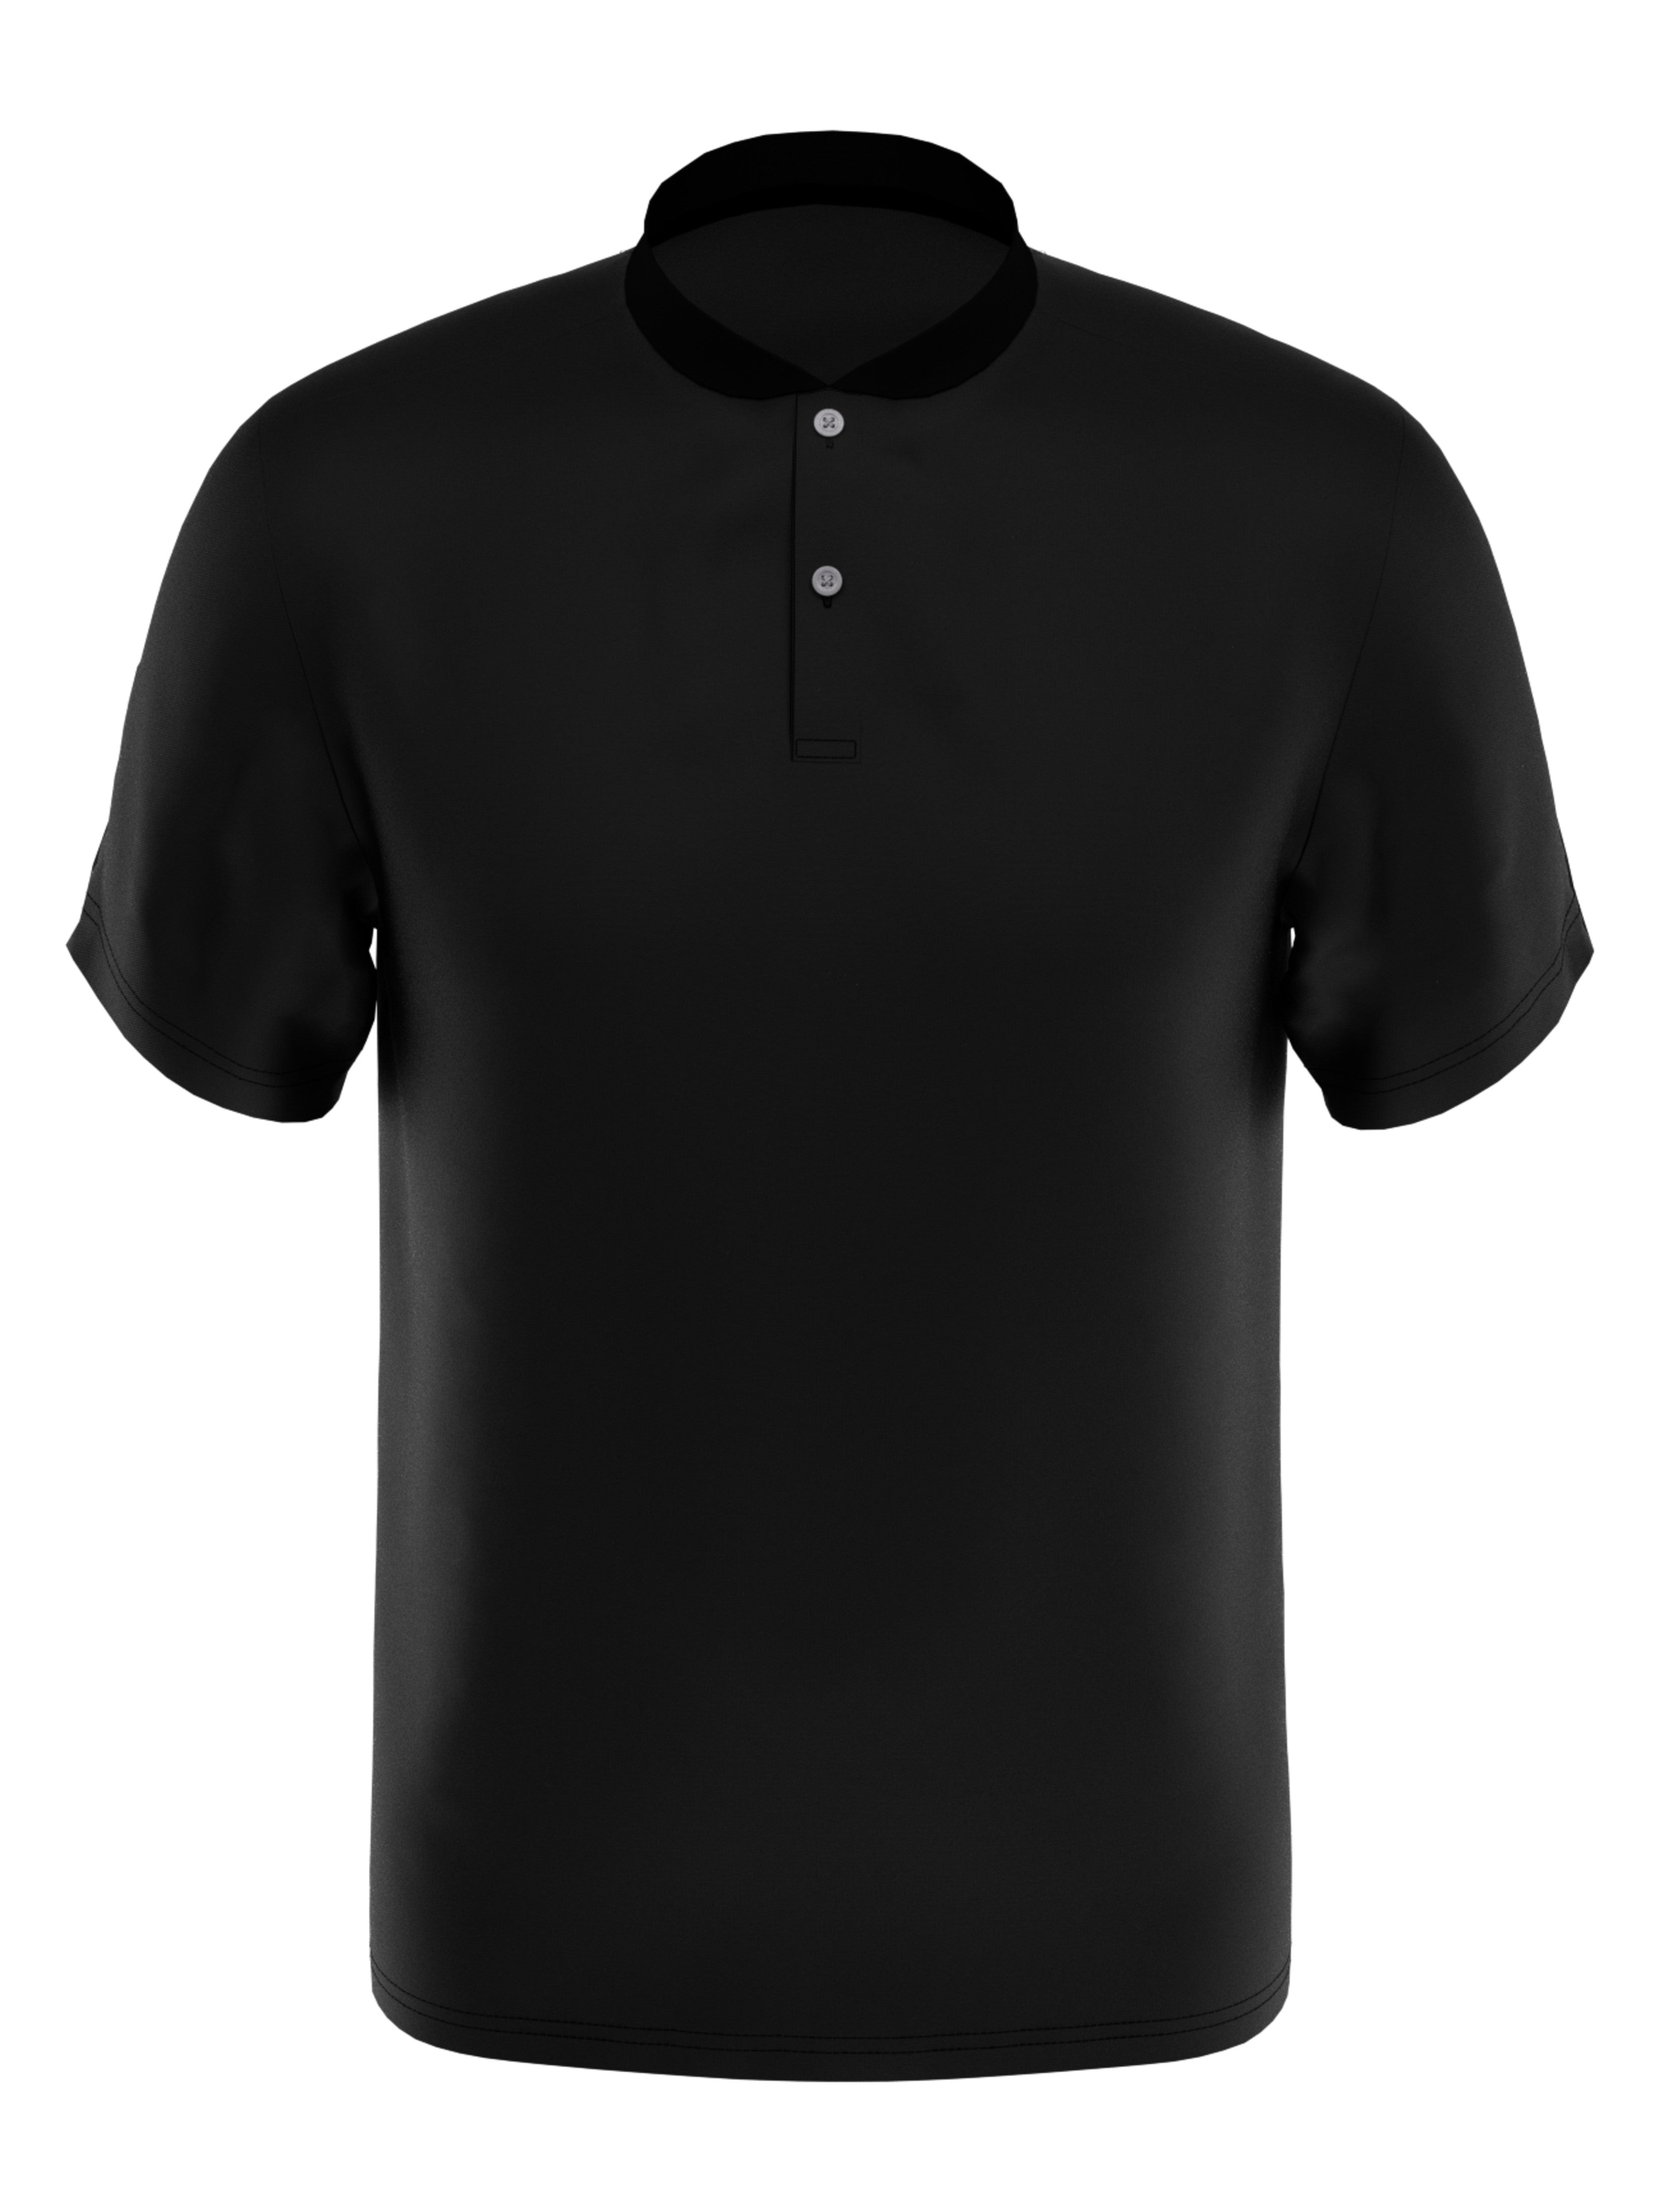 PGA TOUR Apparel Boys Edge Collar Pique Golf Polo Shirt, Size Medium, Black, 100% Polyester | Golf Apparel Shop